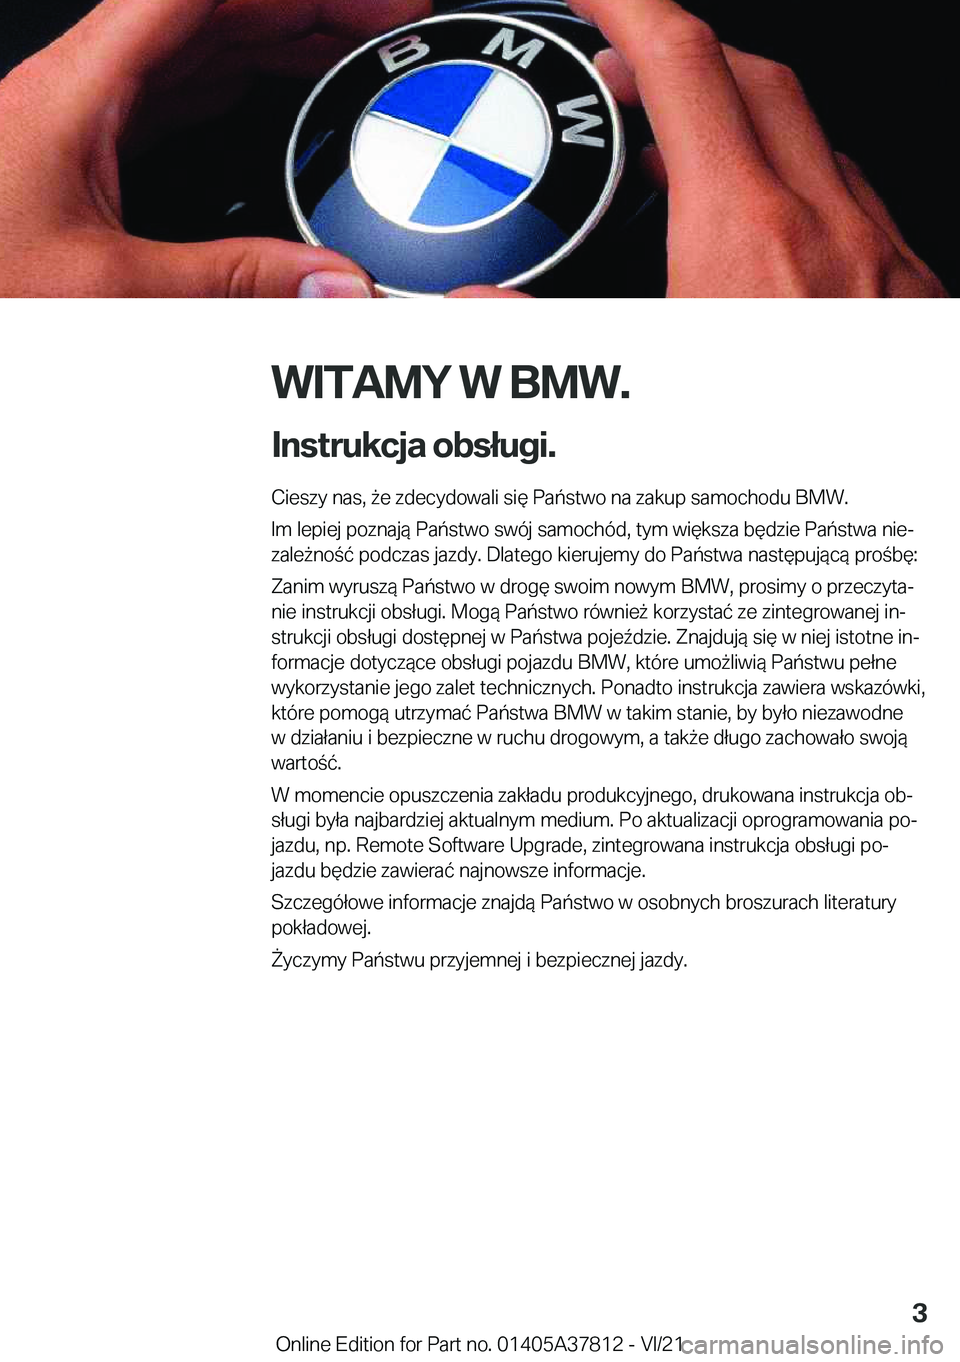 BMW X3 M 2022  Instrukcja obsługi (in Polish) �W�I�T�A�M�Y��W��B�M�W�.
�I�n�s�t�r�u�k�c�j�a��o�b�s�ł�u�g�i�. �C�i�e�s�z�y��n�a�s�,�9�e��z�d�e�c�y�d�o�w�a�l�i��s�i�